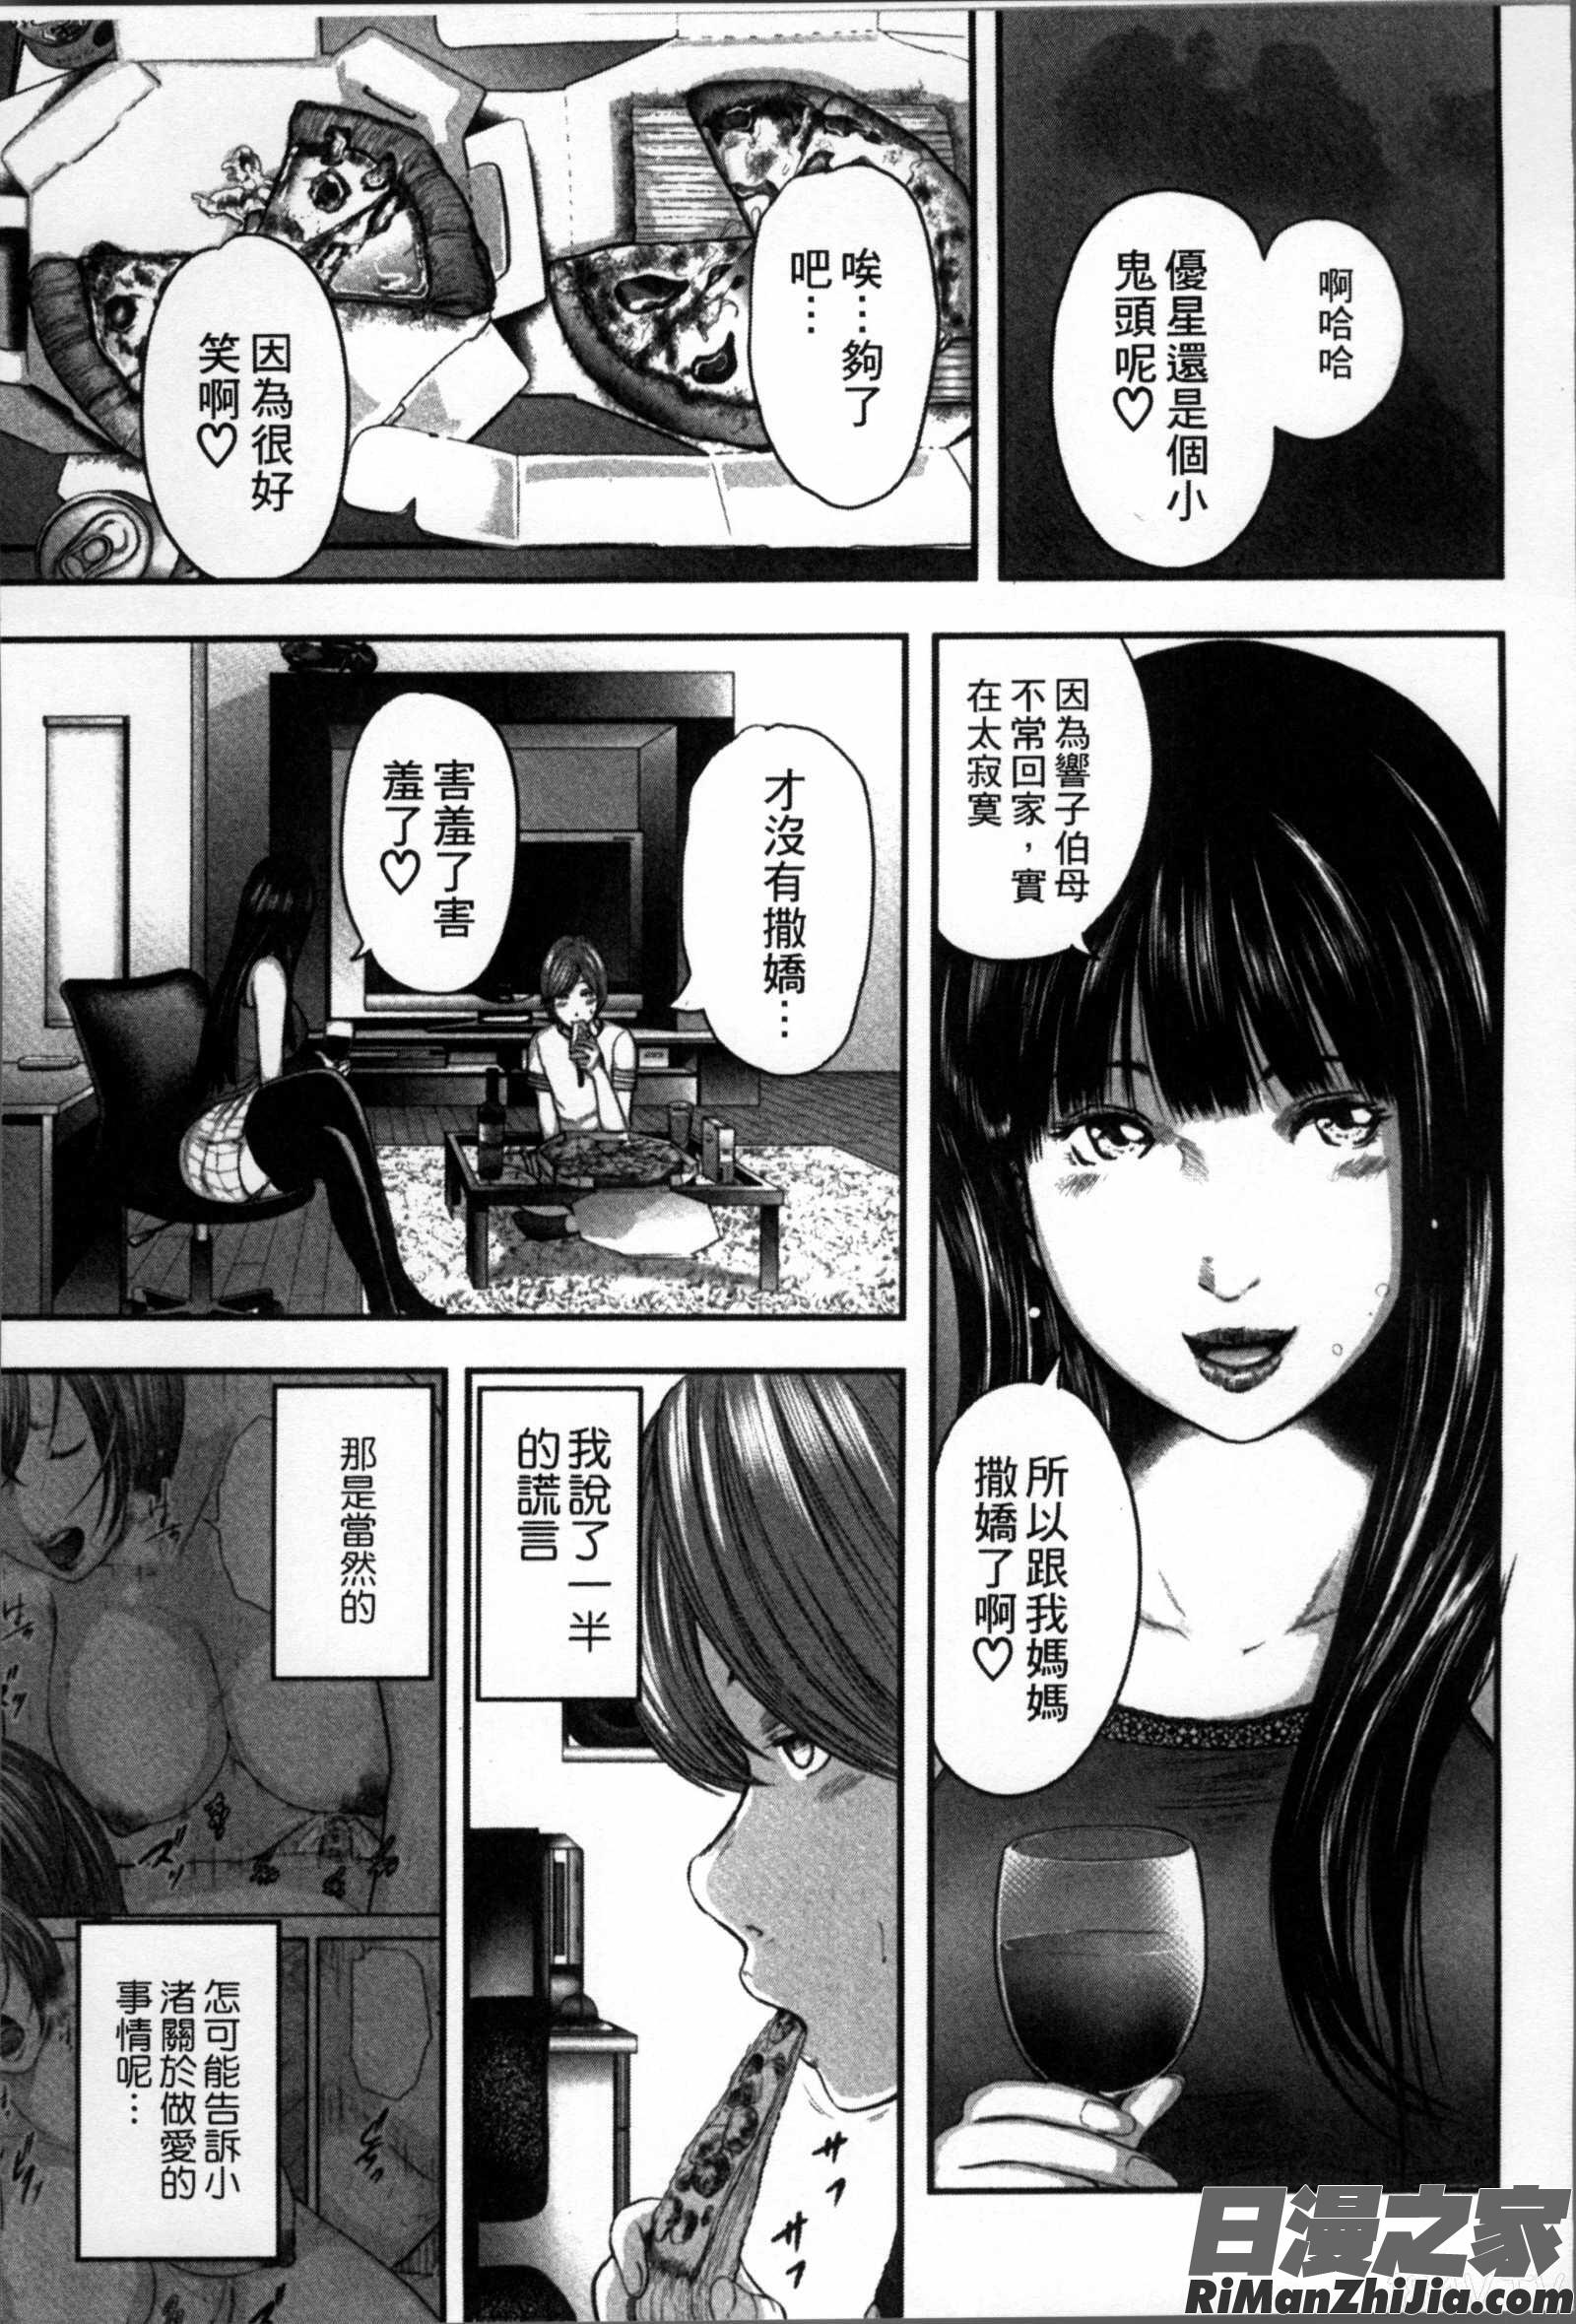 相姦のレプリカ漫画 免费阅读 整部漫画 197.jpg